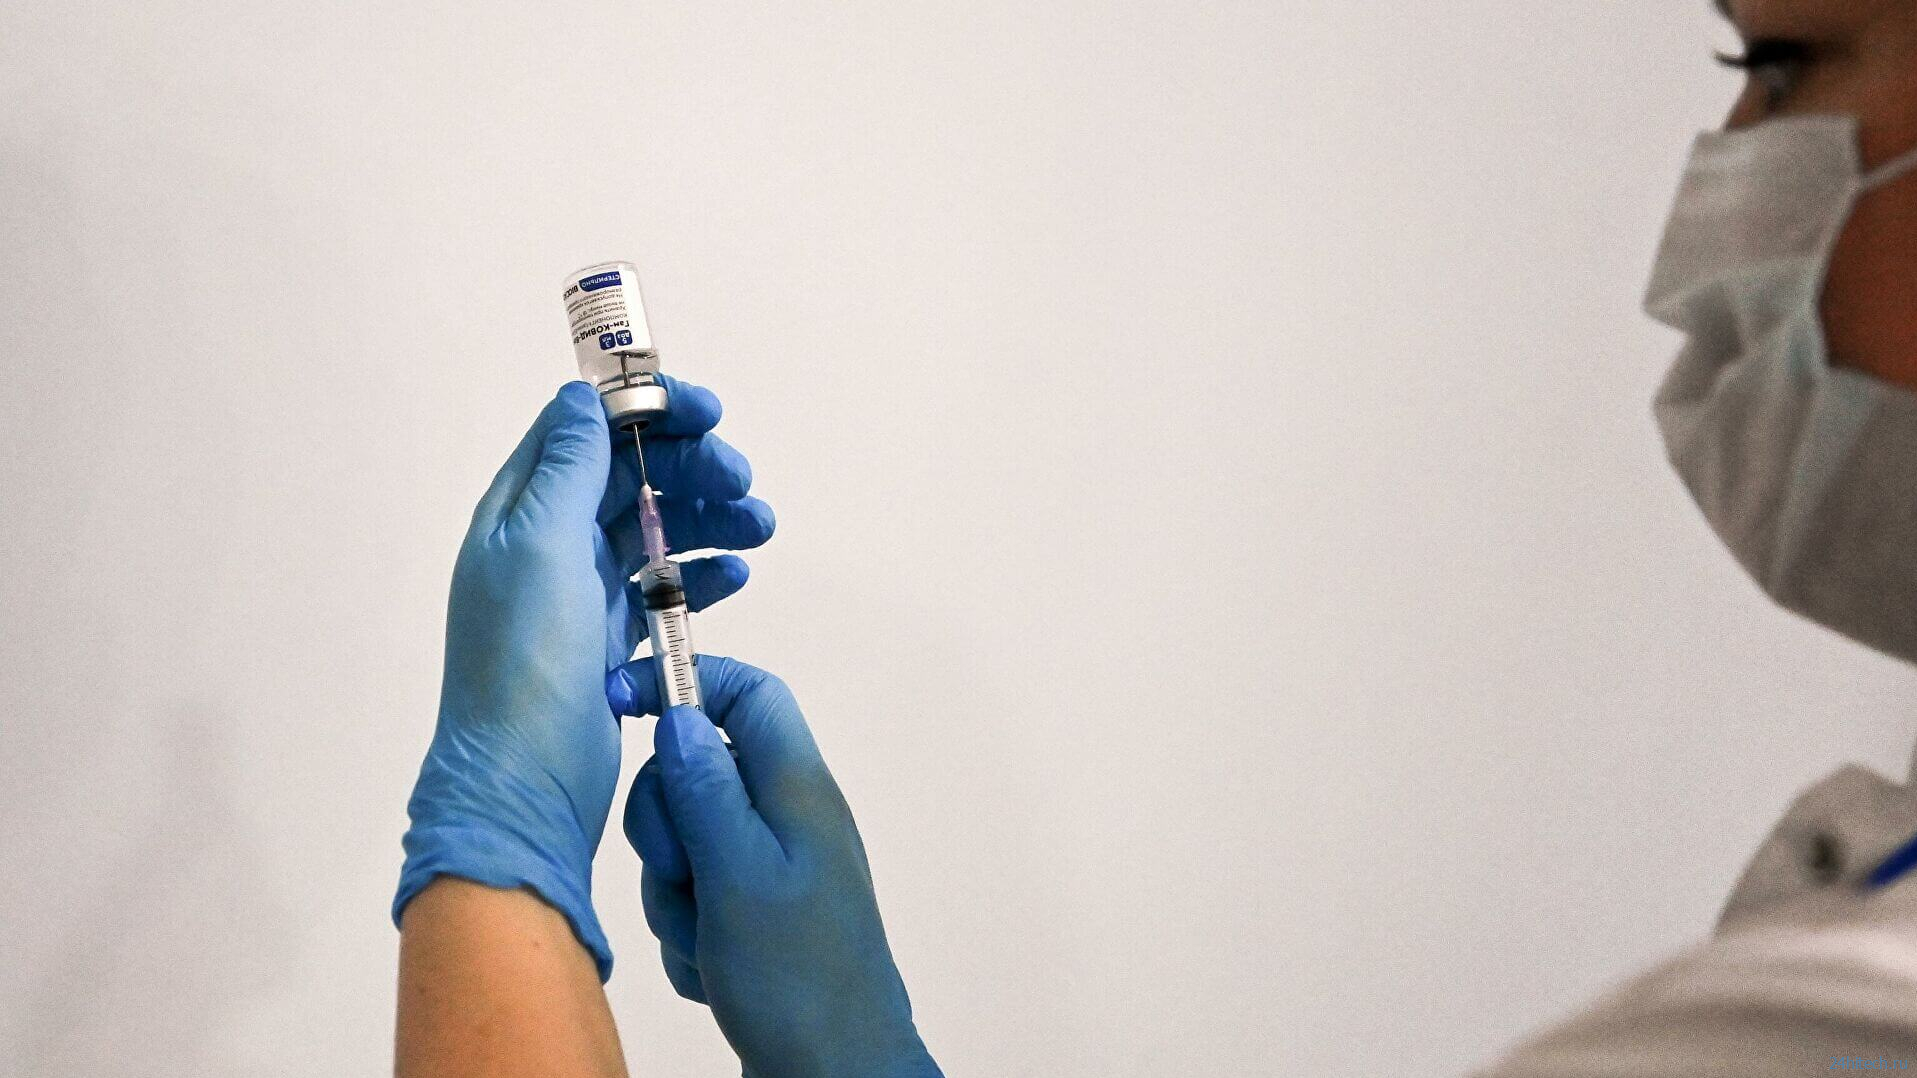 Эффективность вакцины "Спутник V" в третьей фазе испытаний превысила 91% - Lancet - фото 1